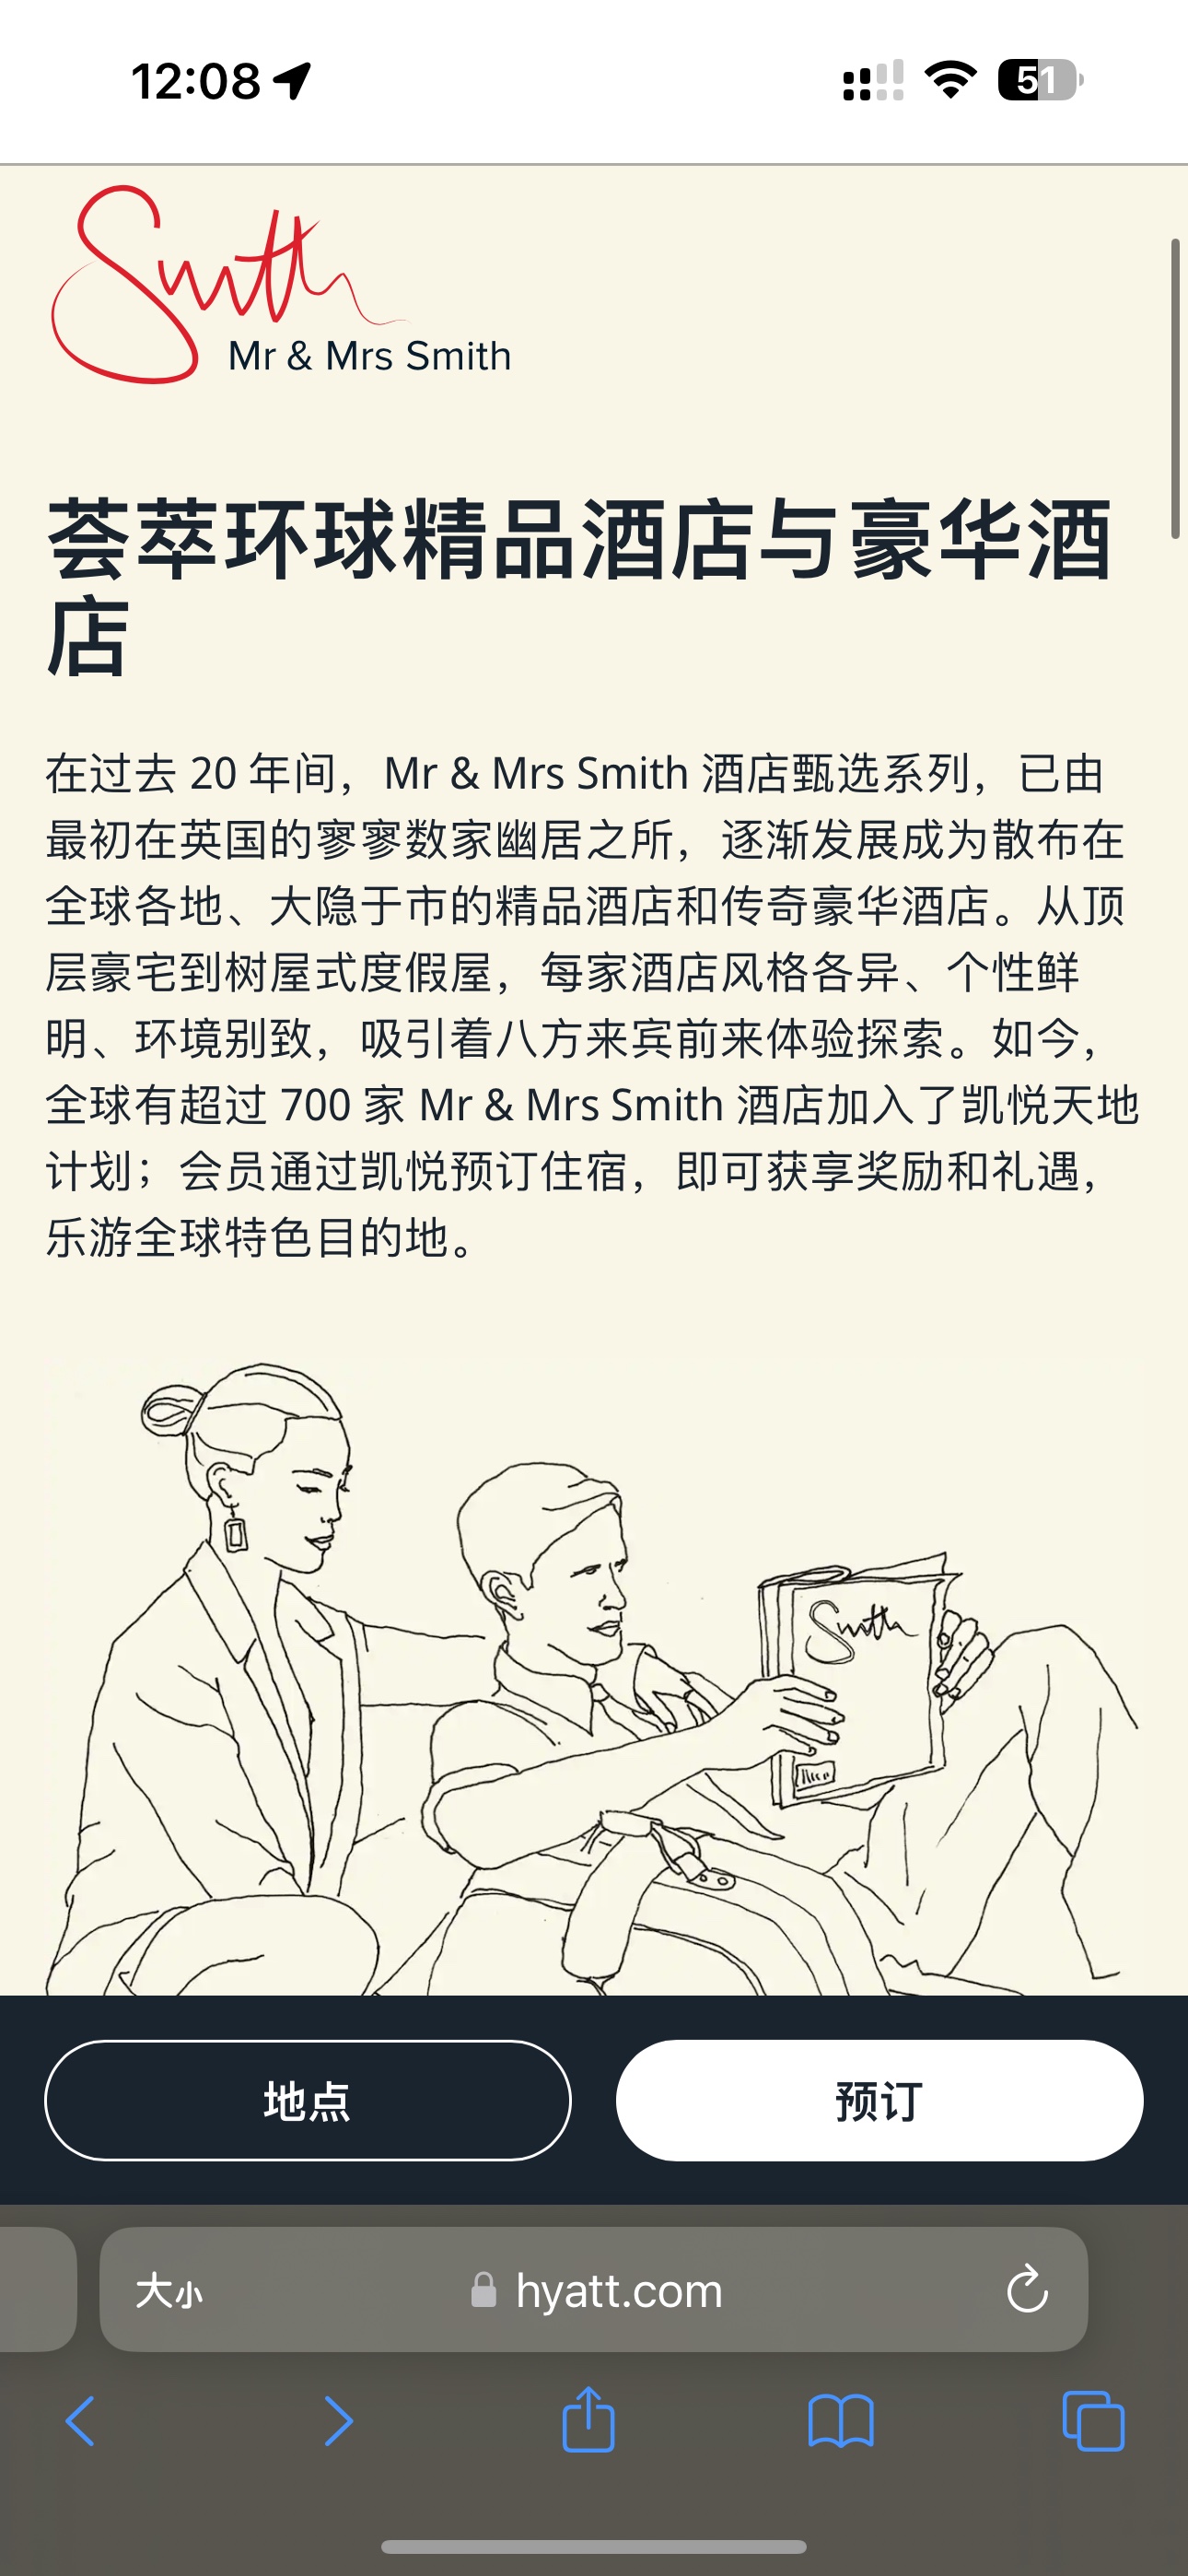 Mr. & Mrs. Smith߹1Ԫ5